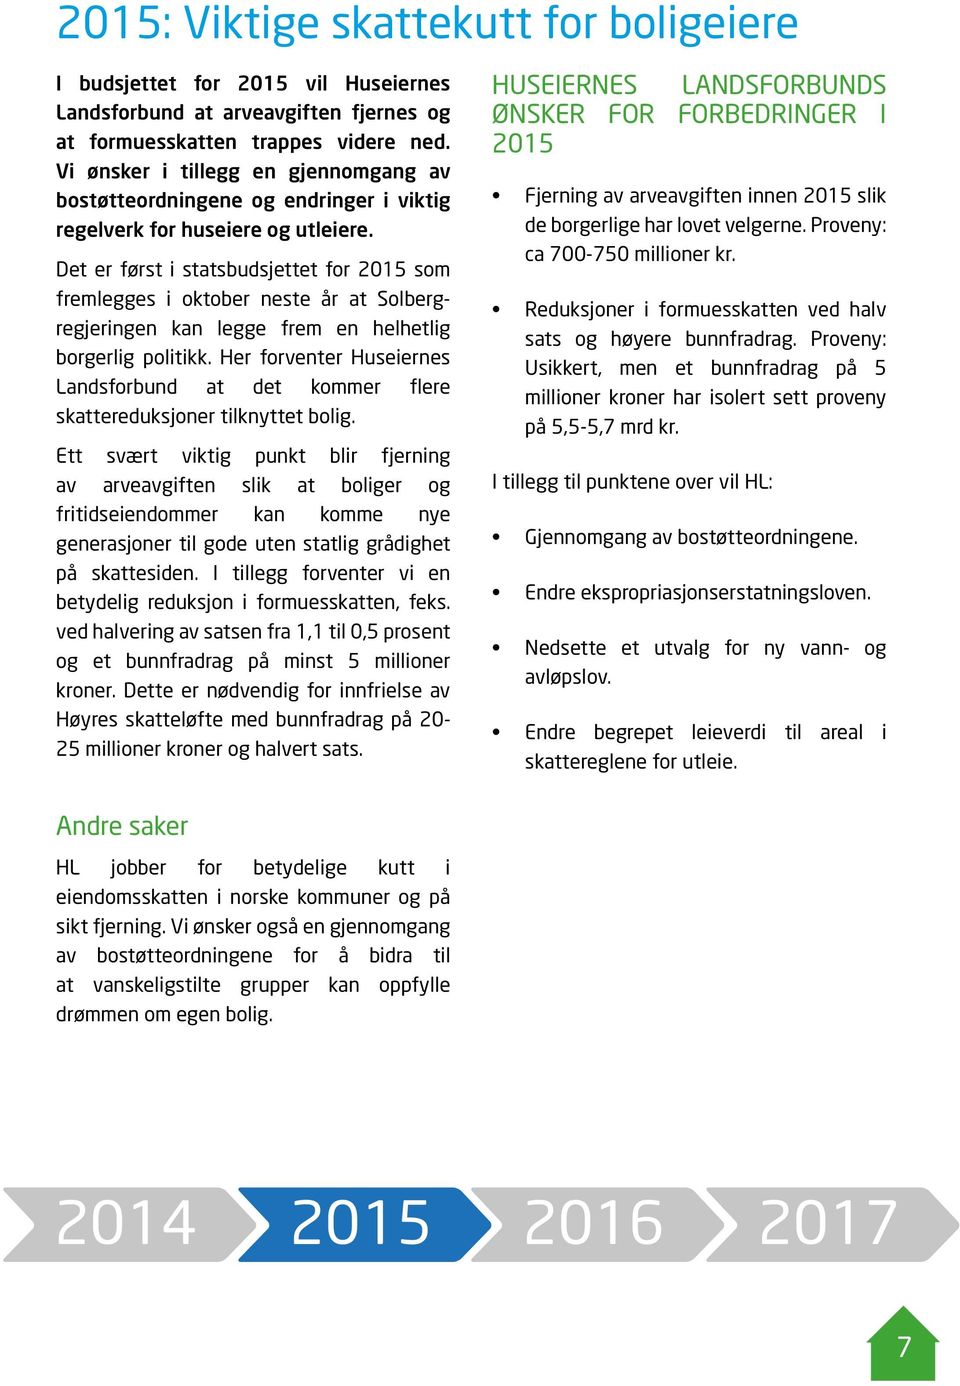 Det er først i statsbudsjettet for 2015 som fremlegges i oktober neste år at Solbergregjeringen kan legge frem en helhetlig borgerlig politikk.